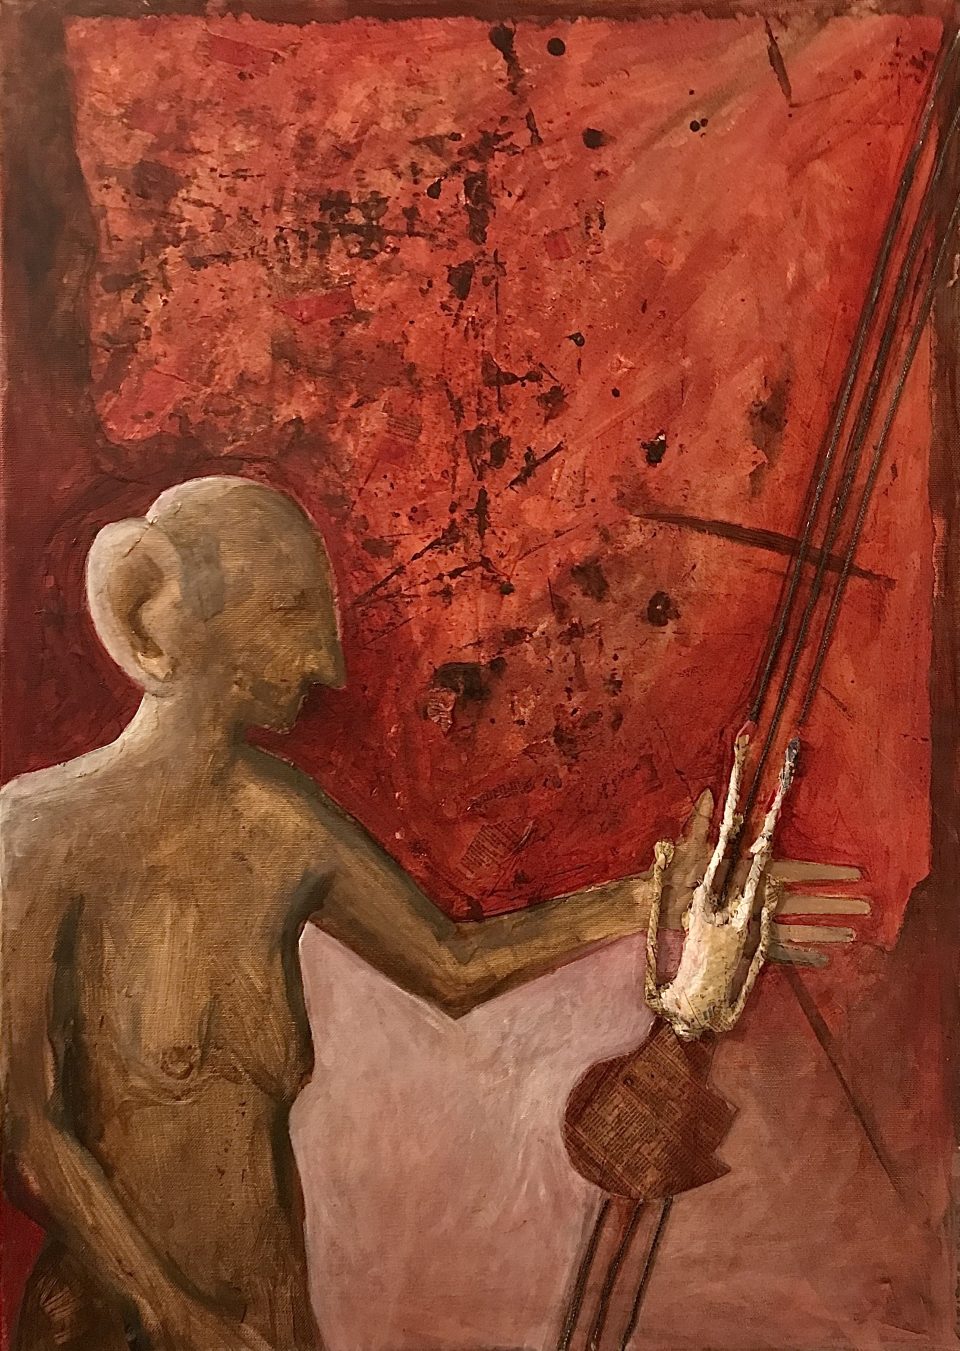 Abstrakte weibliche Figur streckt den Arm aus nach einer fallenden kleinen Figur, deren Körper aus Zeitungspapier assembliert und deren Kopf collagiert ist, auf Rotem Hintergrund auf Leinwand, 70 x 50 cm